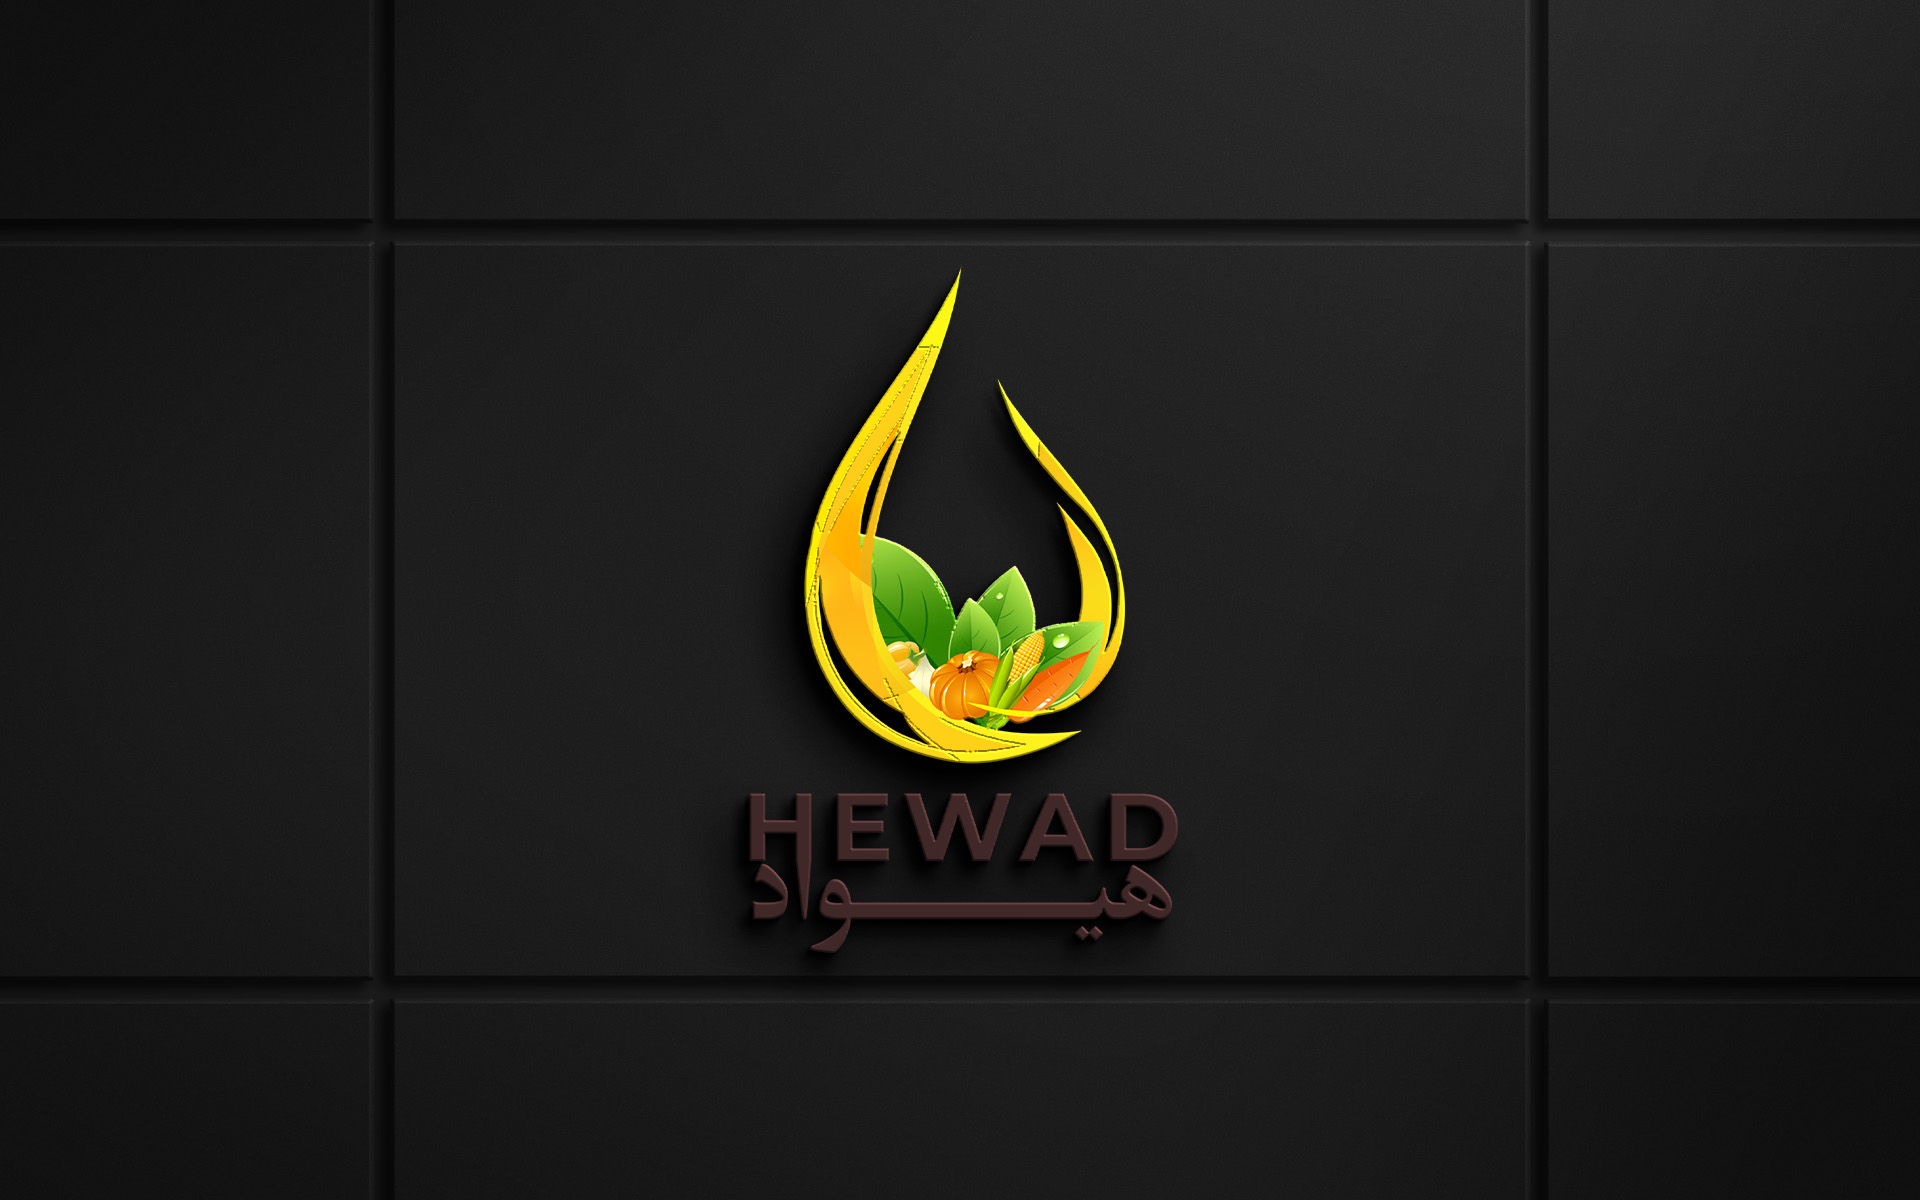 Hewad Foods